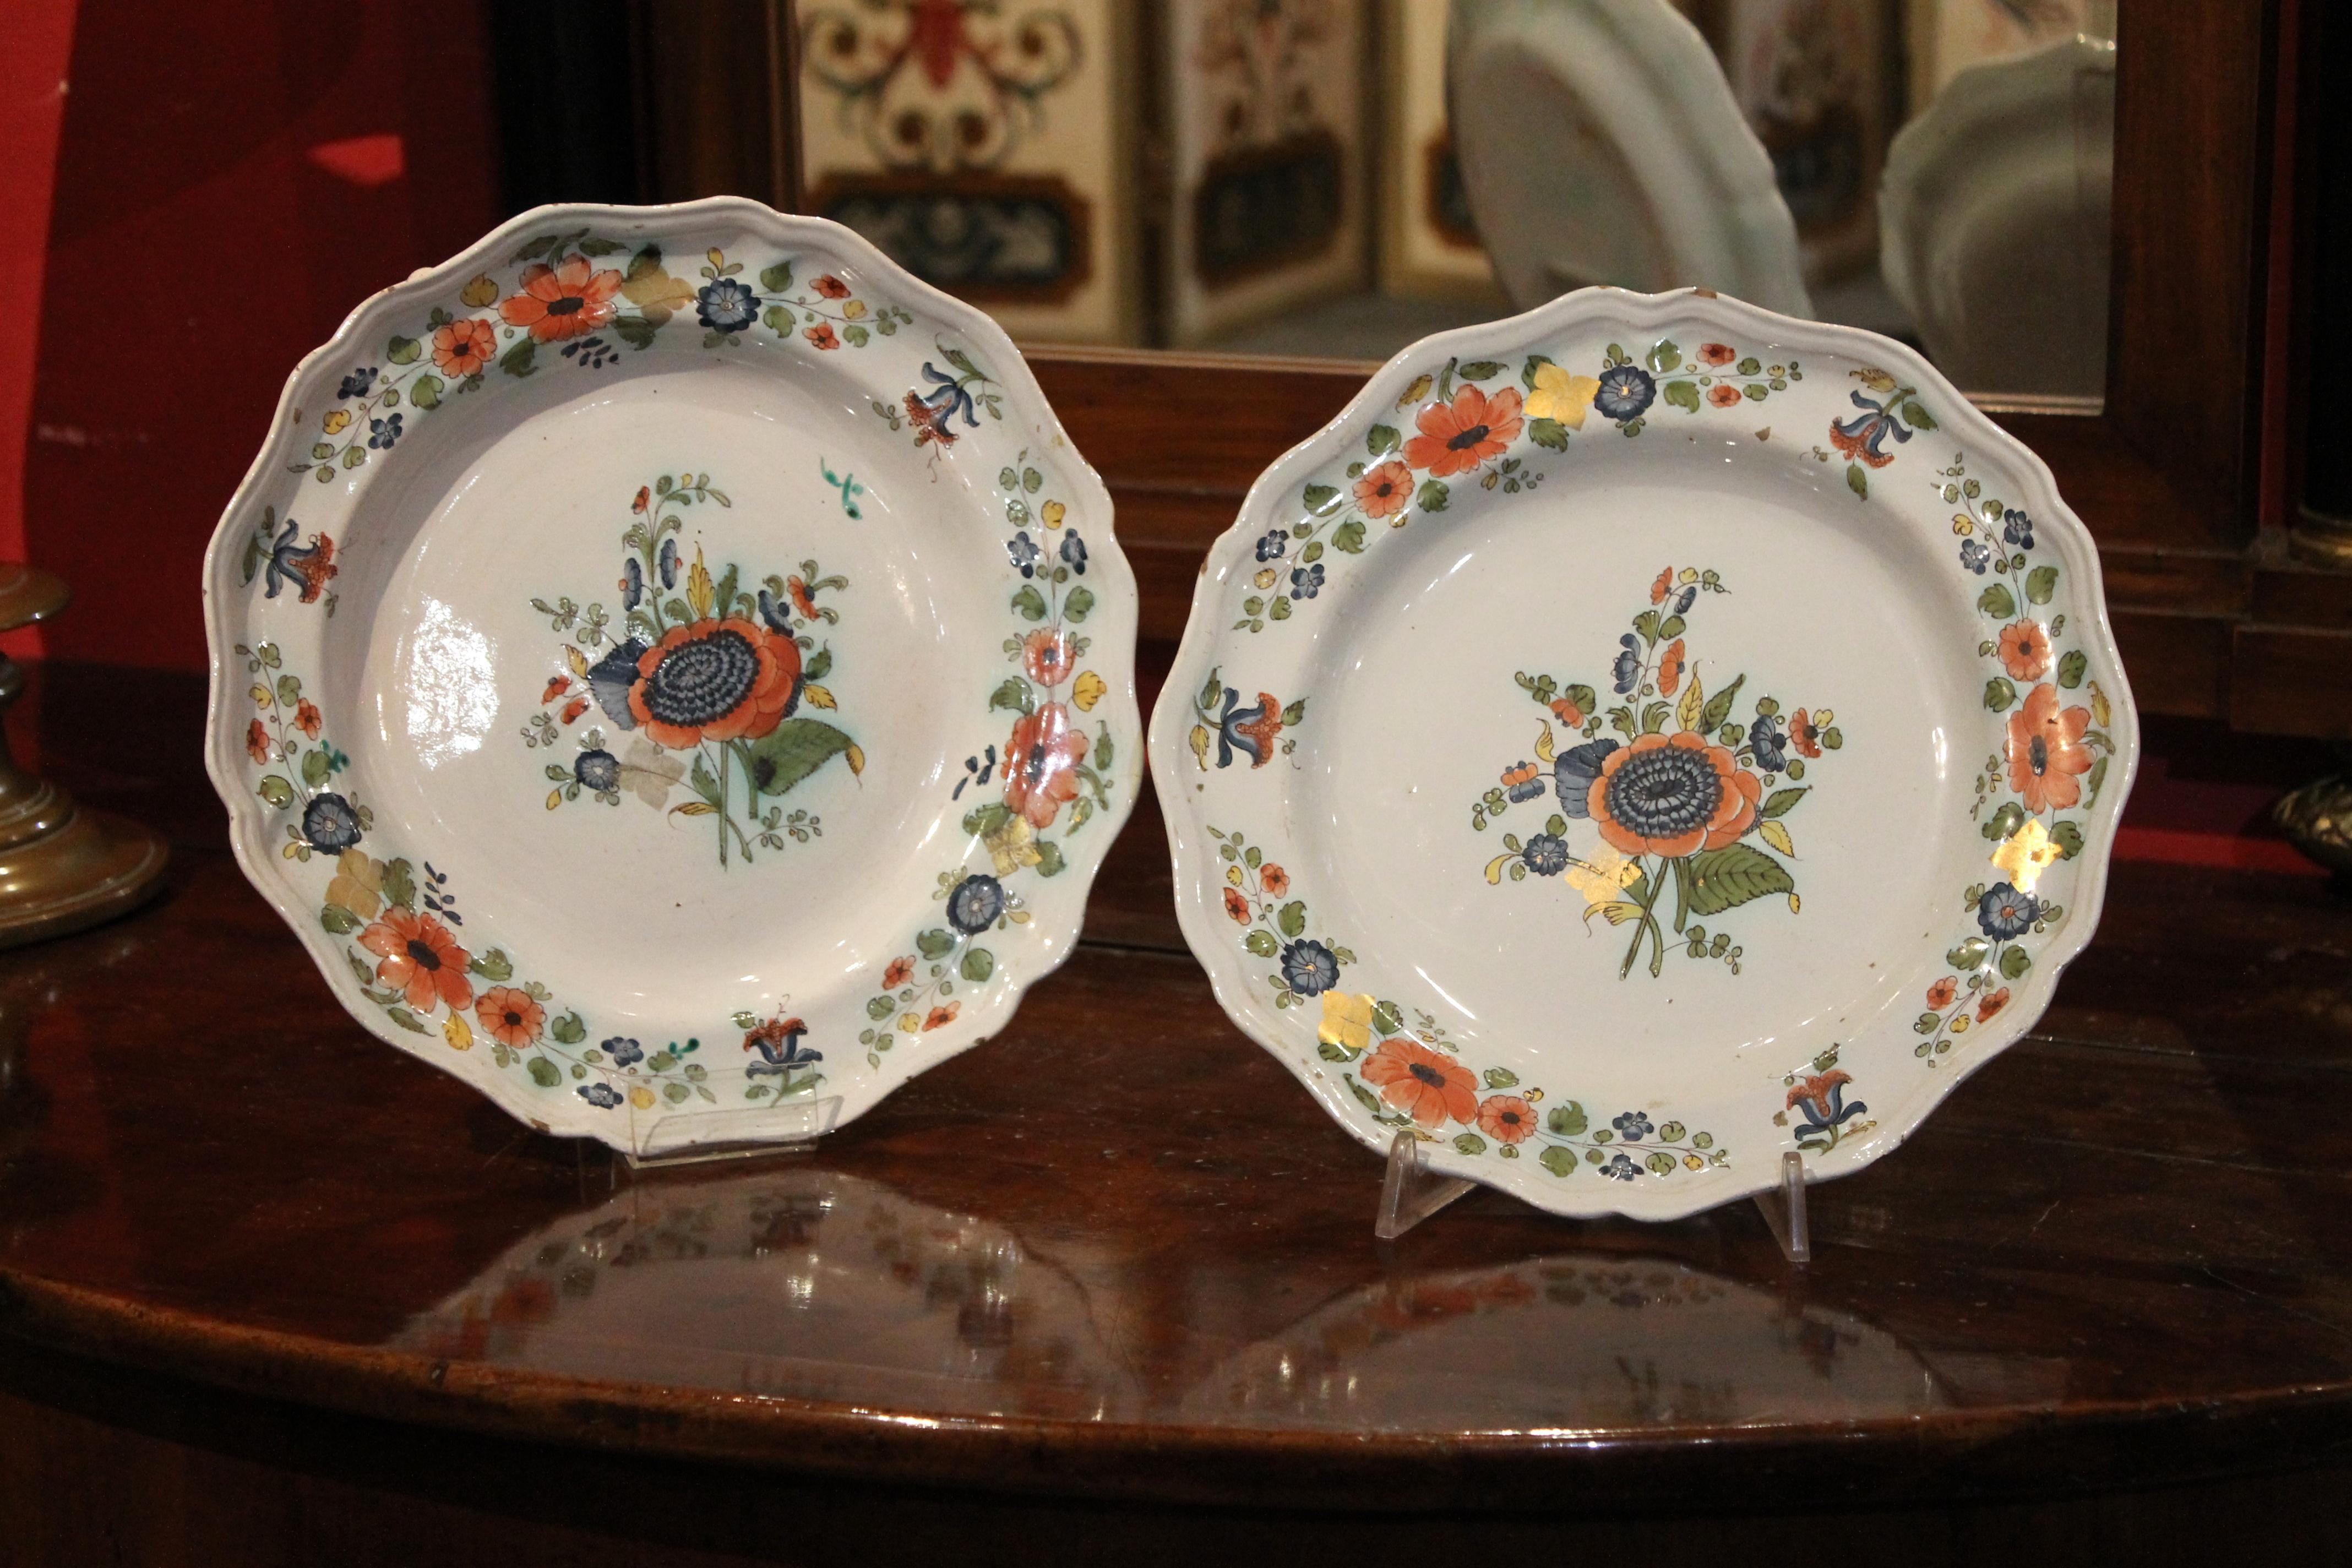 Diese beiden schönen und antiken handbemalten mehrfarbigen Porzellanschalen stammen aus dem Jahr 1700.
Jeder Teller hat einen geformten Rand, der mit einem Relief versehen ist. Der weiße Porzellanhintergrund ist durchgehend mit Blumen und Blättern